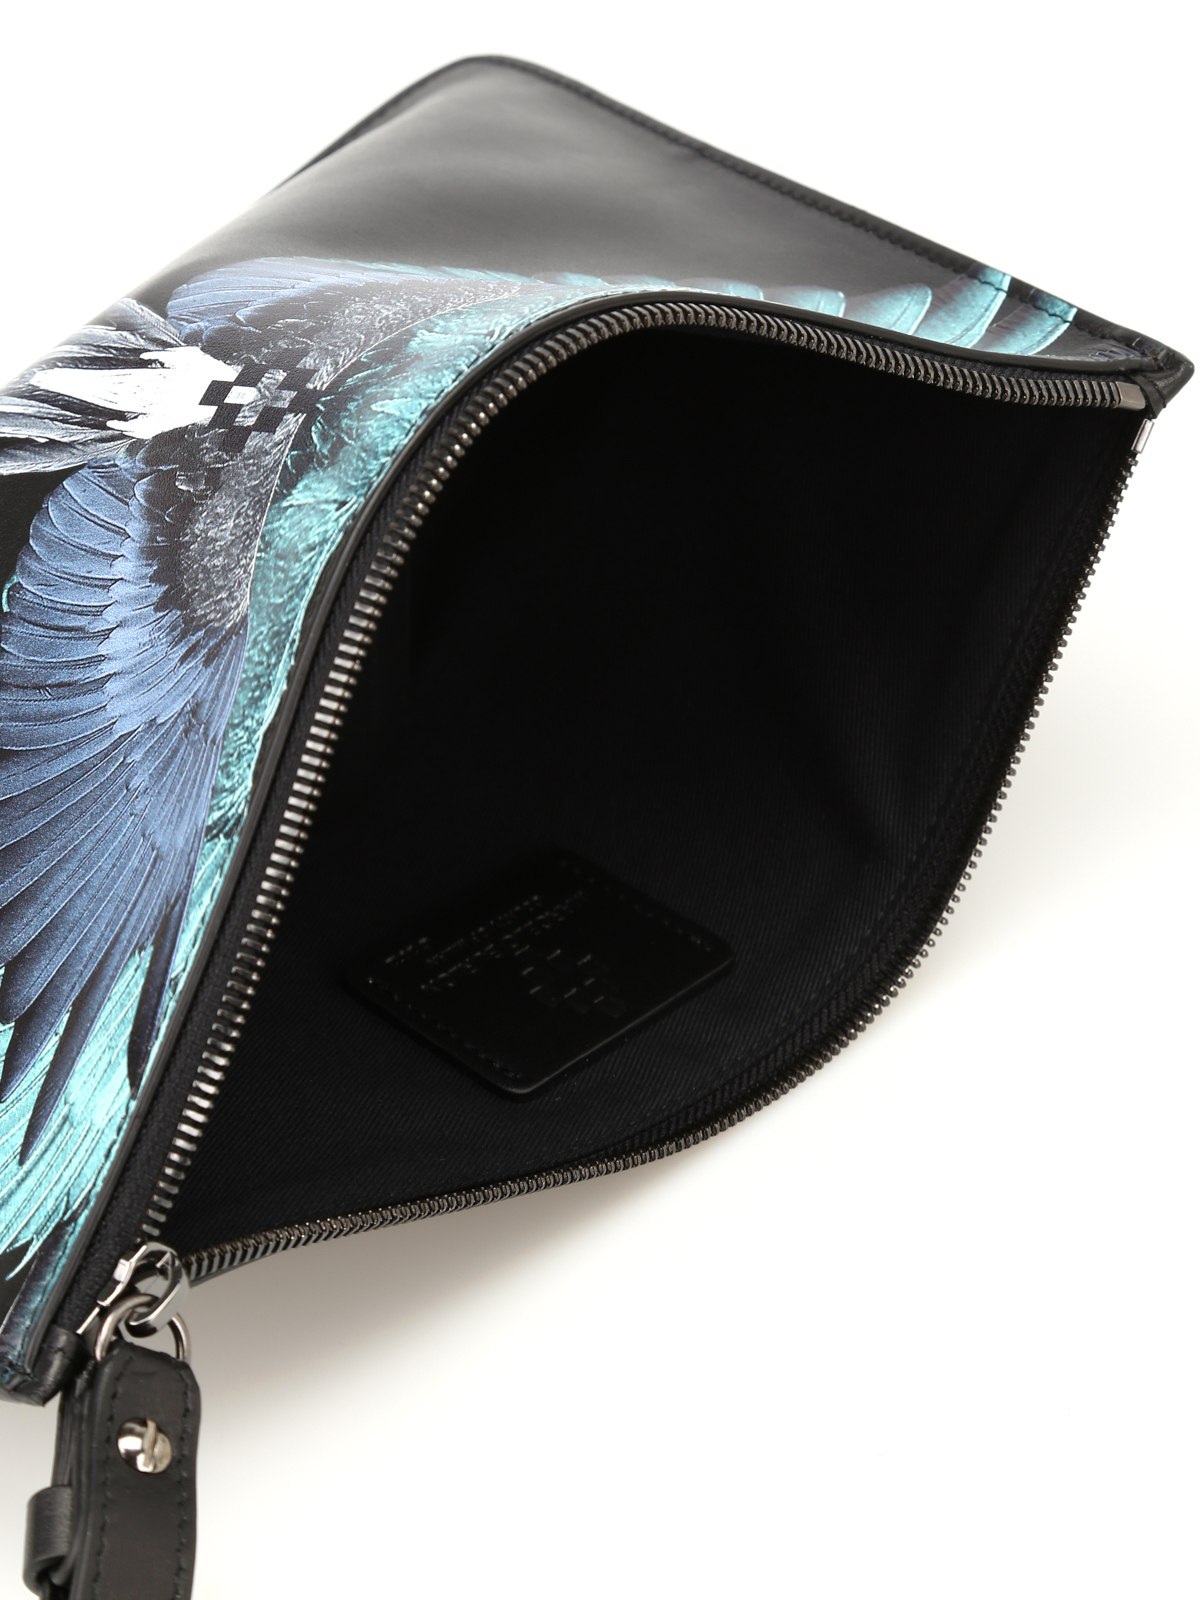 Lænestol Array Profit Clutches Marcelo Burlon - Wings print leather zipped pouch -  CWNA018S1880627310